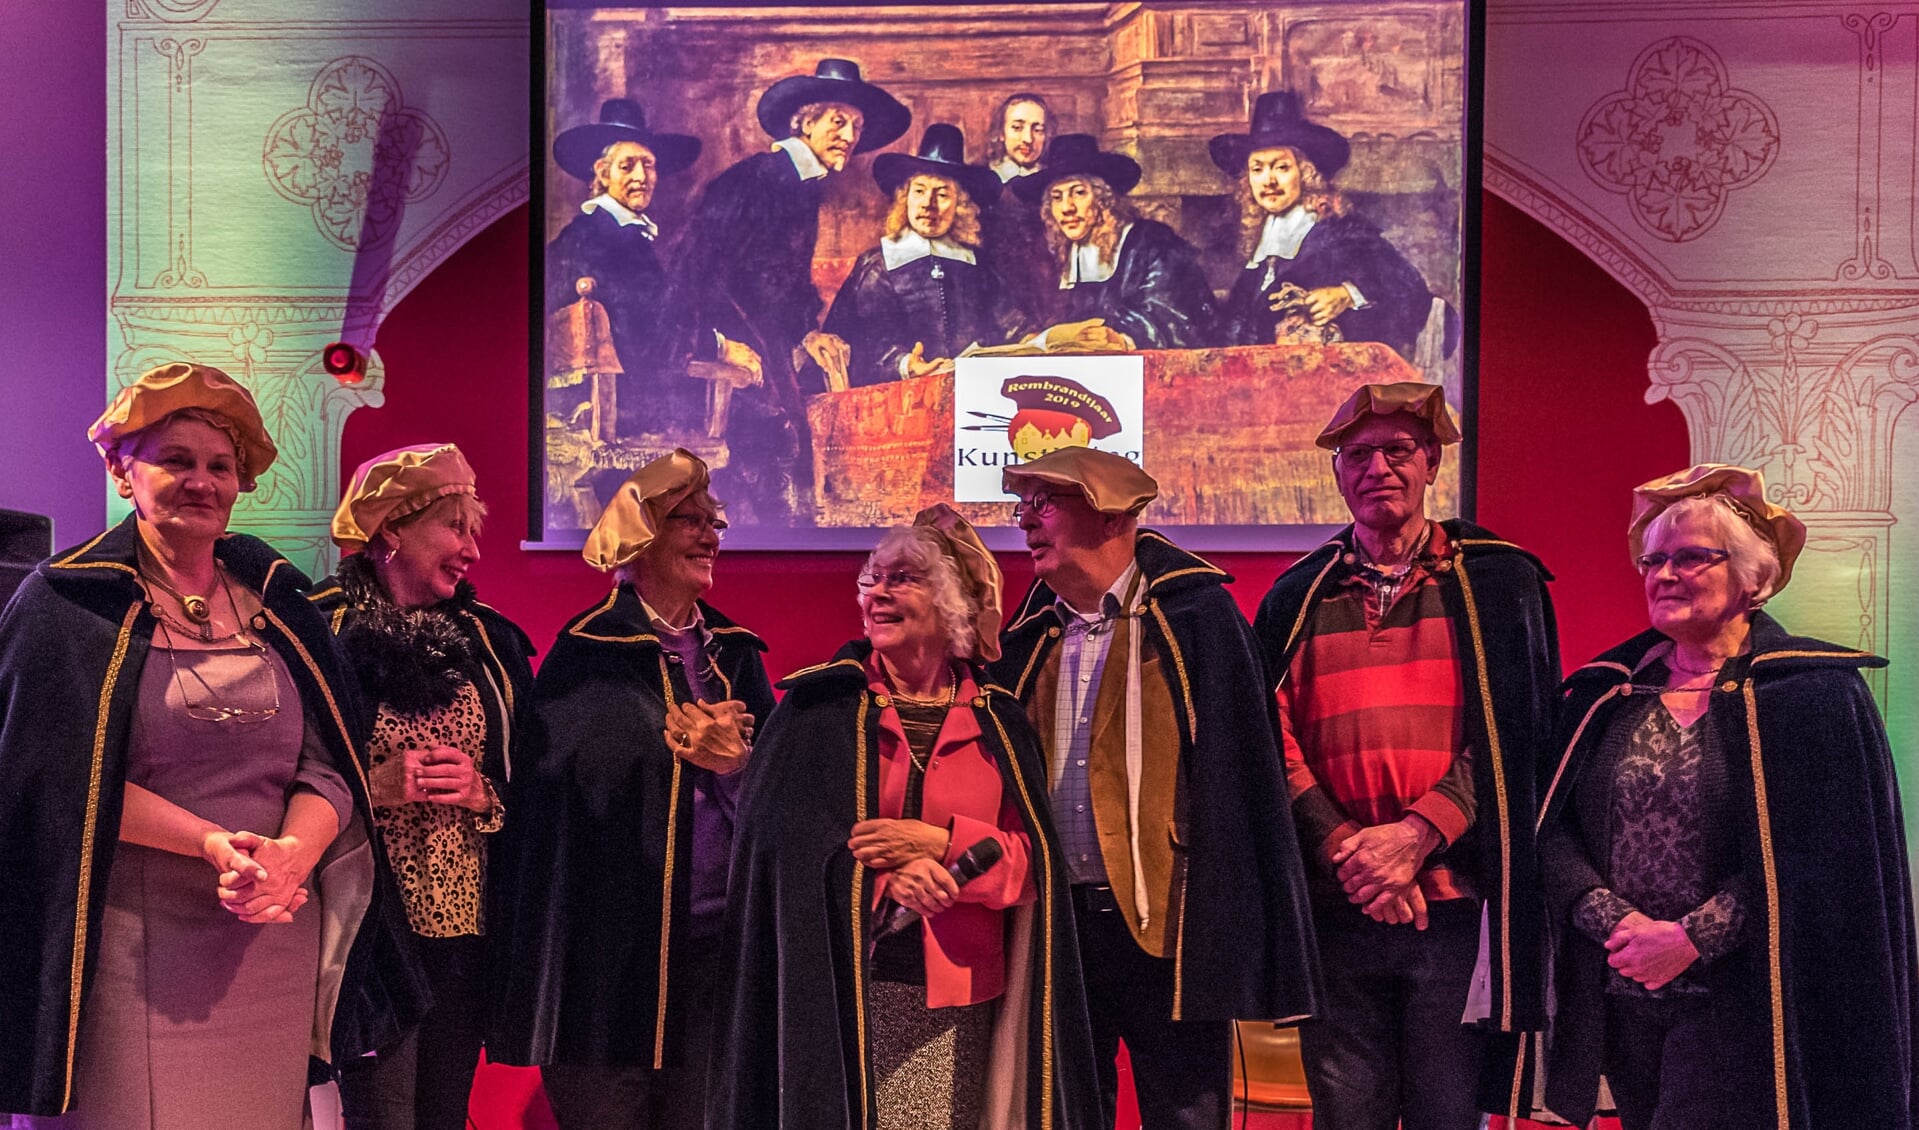 Een deel van de Projectgroep Rembrandt van de KunstKring Ruurlo die bij de verschillende activiteiten steevast in ‘Rembrandt’ kleding zich presenteert. Foto: Louis Swart